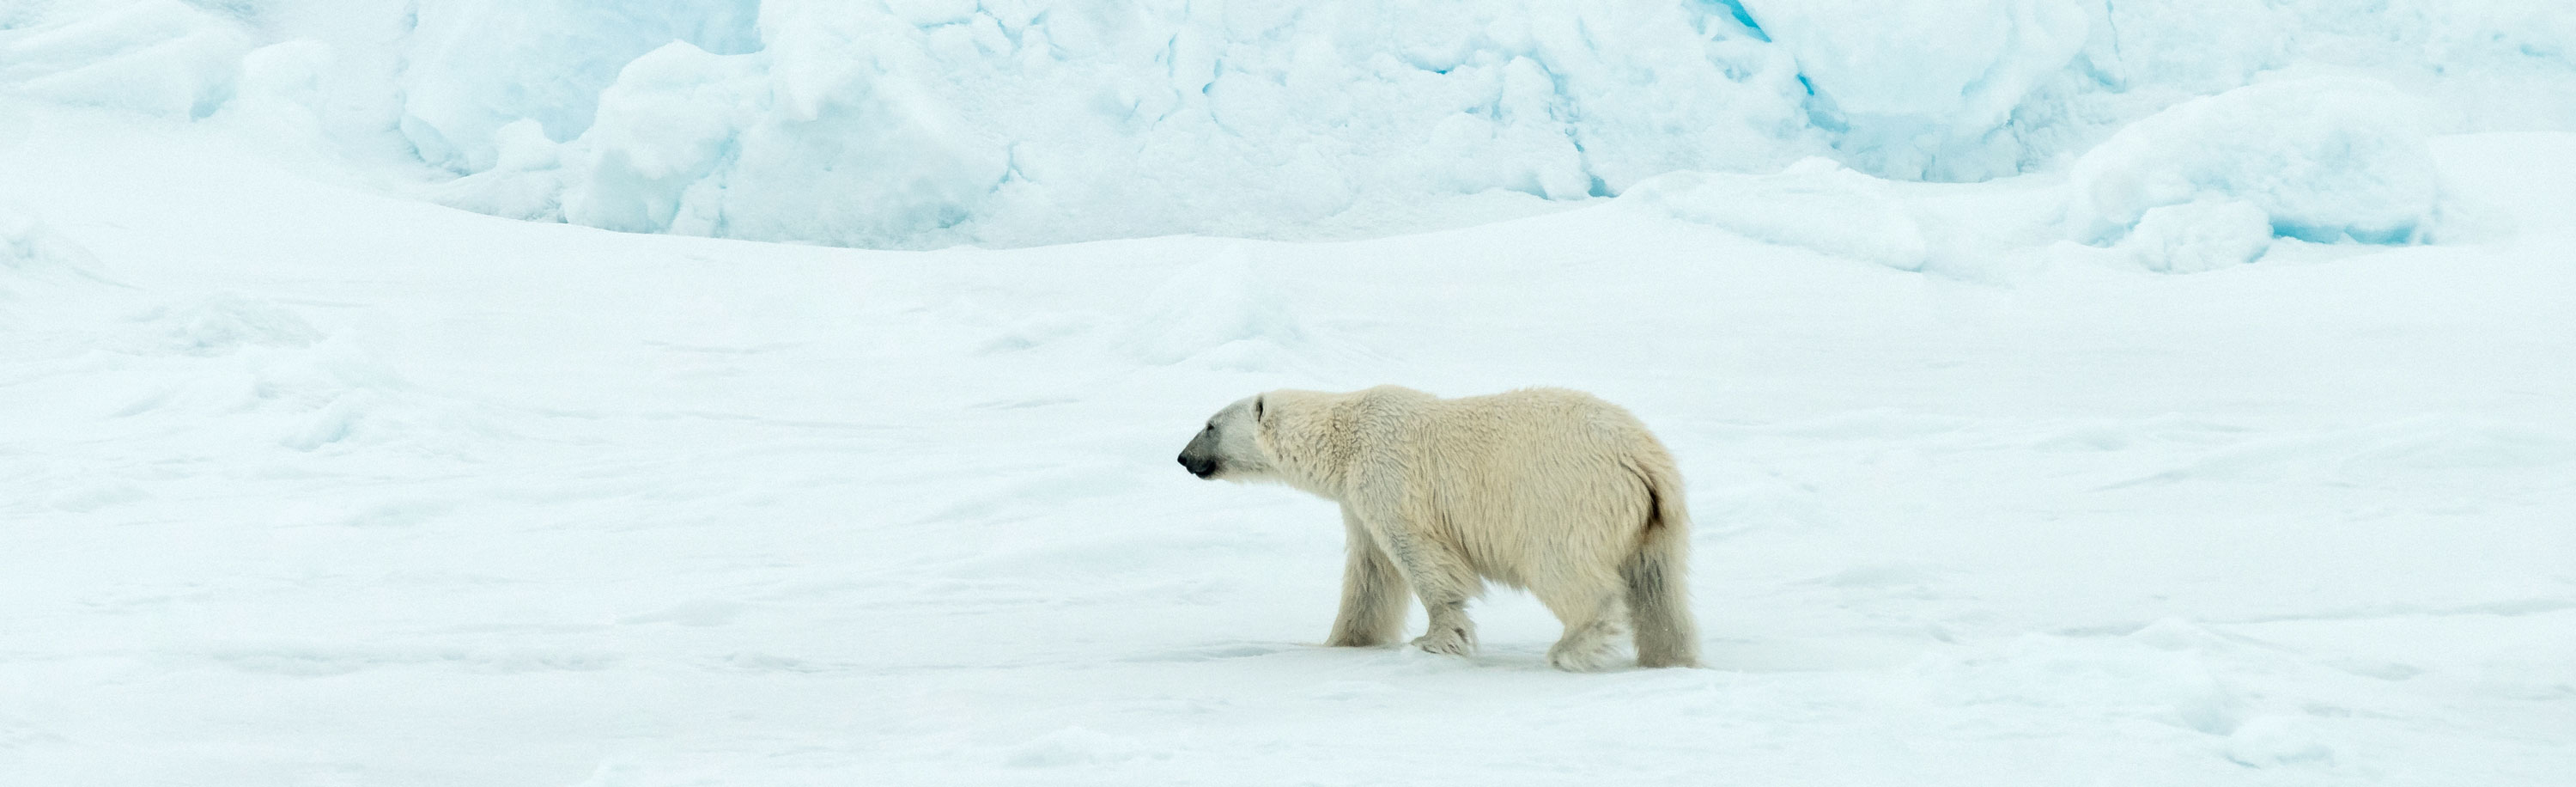 Eisbär am Nordpol - Dreharbeiten für eine ZDF-Reportage